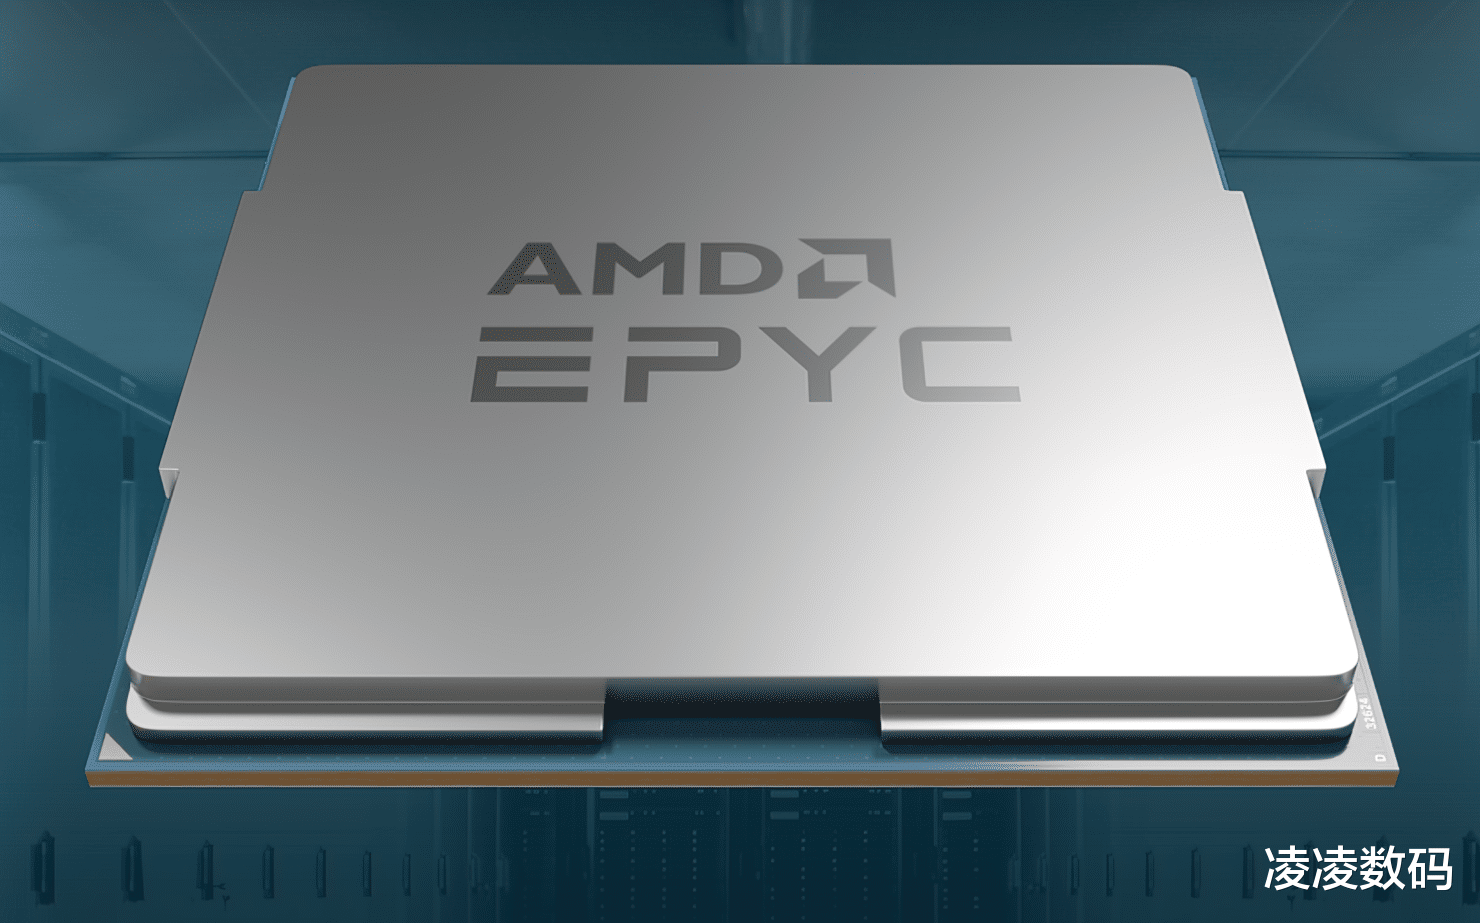 中国移动|AMD霄龙热那亚CPU搭载128个核心256线程，400W功耗，4G+频率